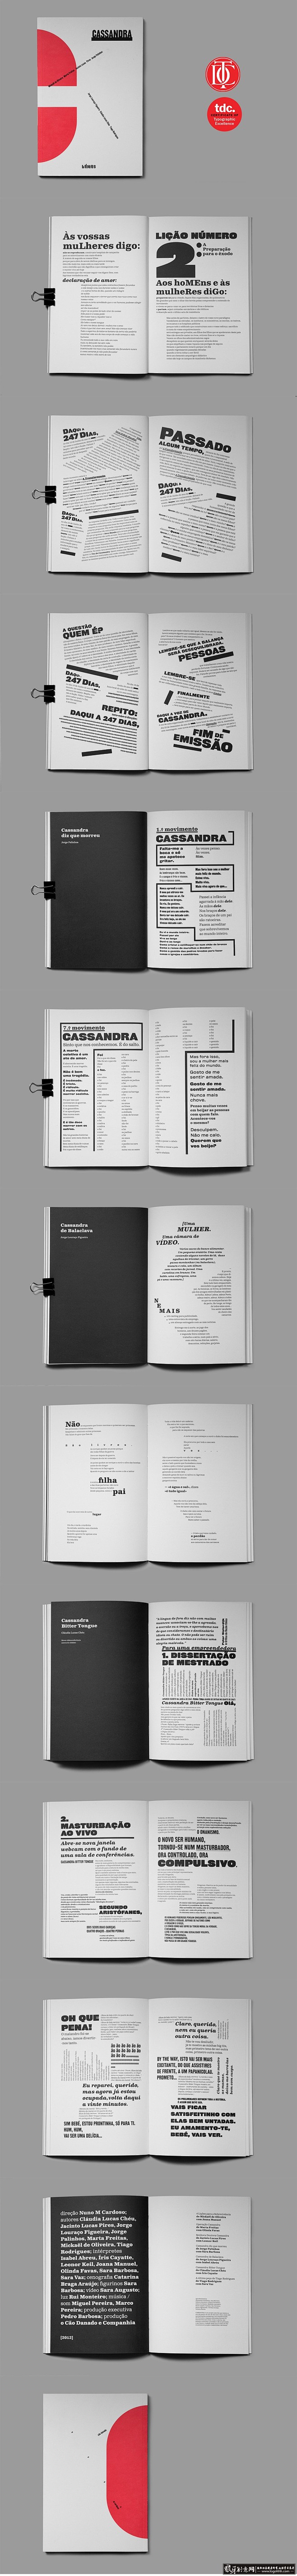 创意画册 红色封面画册设计 创意画册设计...